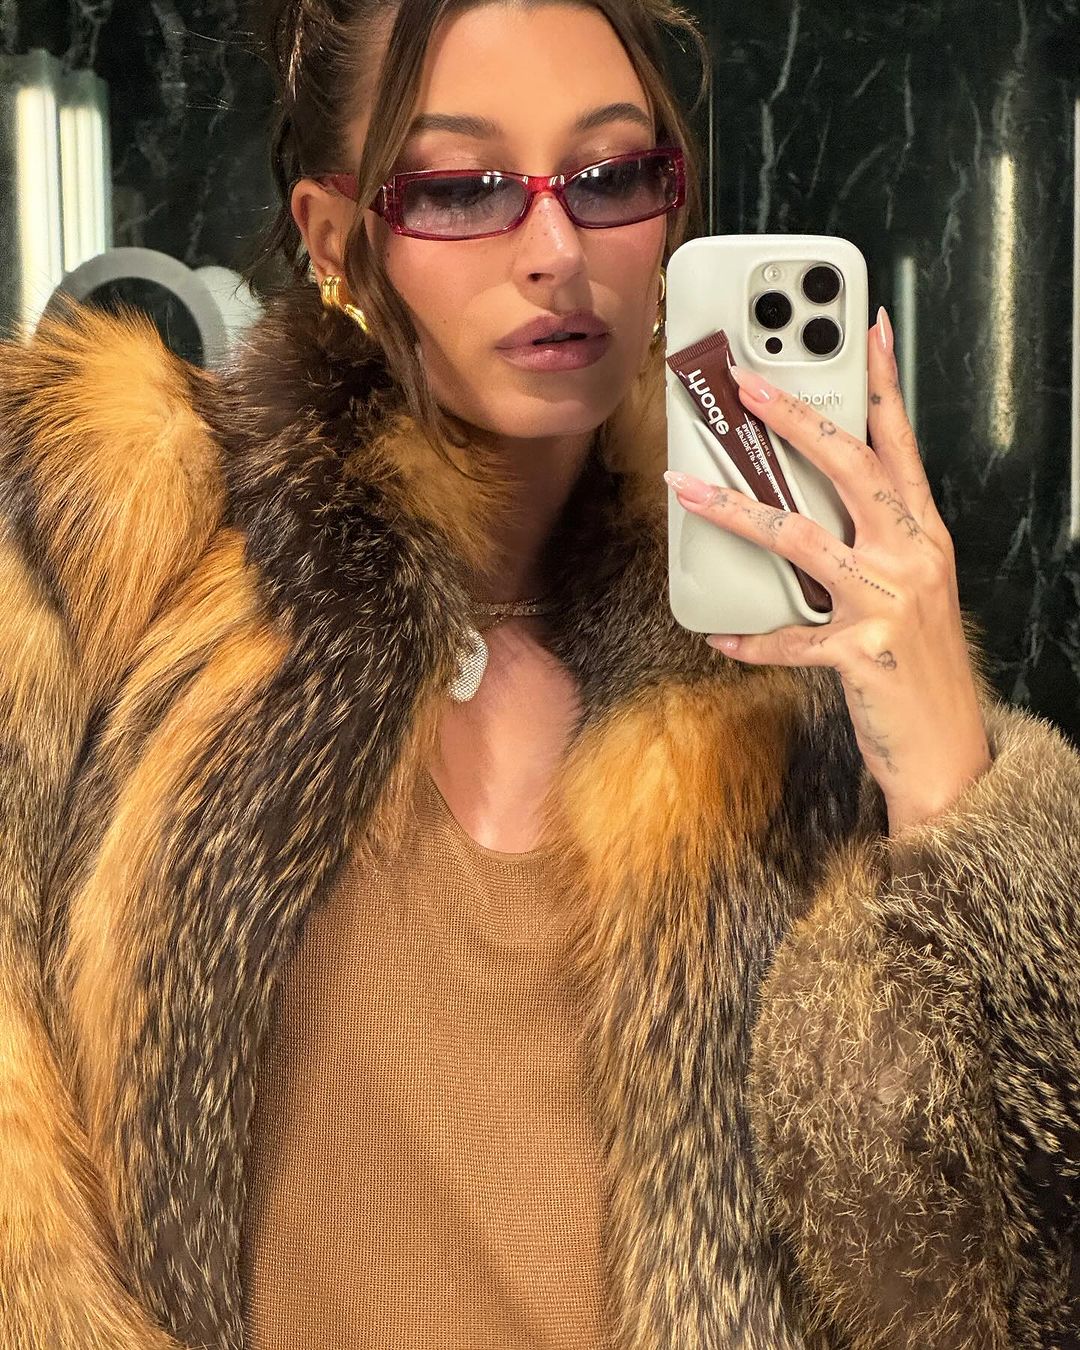 hailey bieber se prend en photo dans le miroir avec des lunettes de soleil